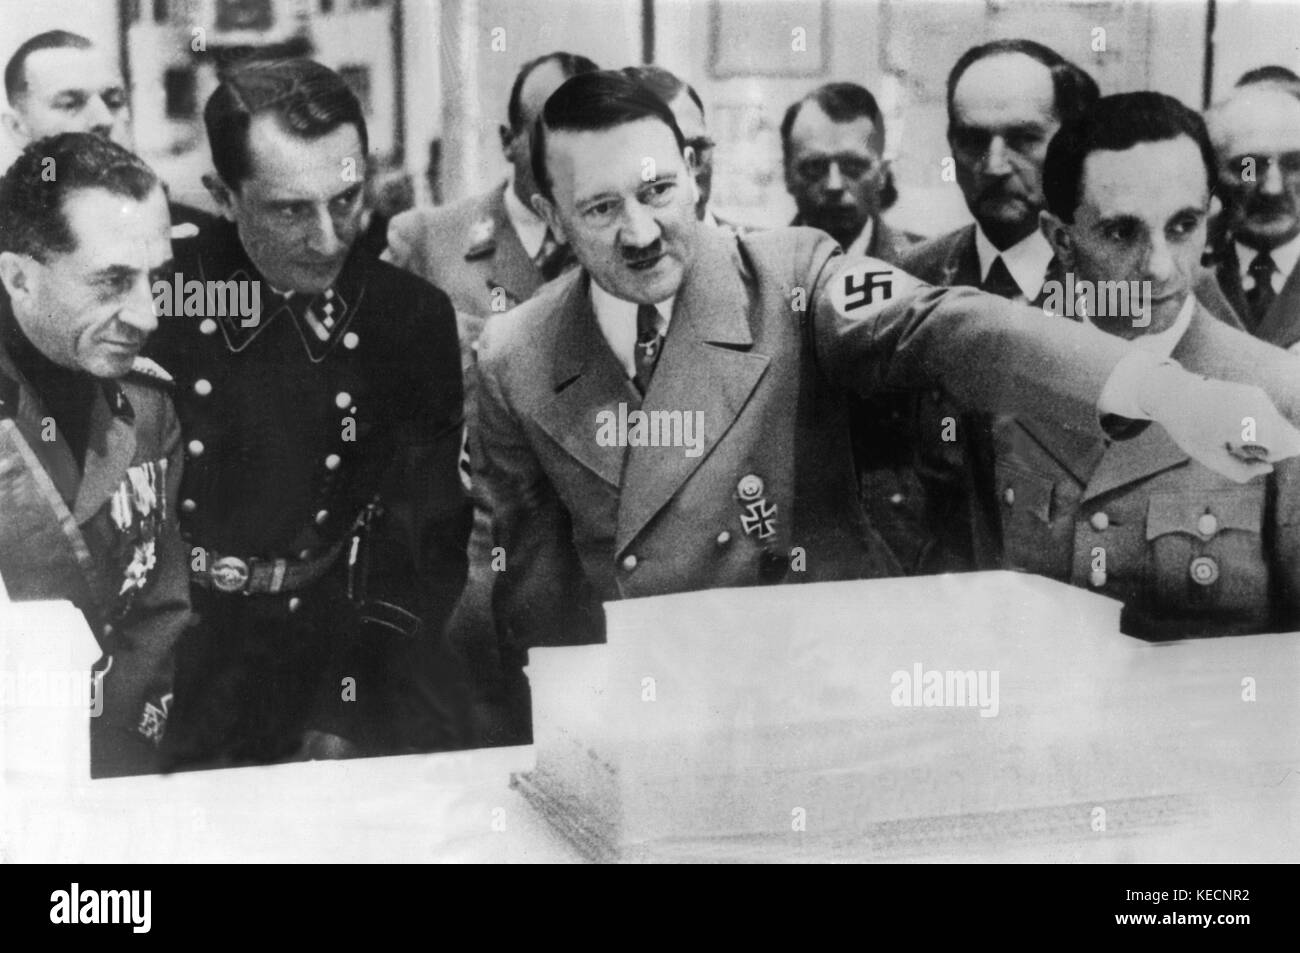 Adolf Hitler (m) erklärt das Modell eines Gebäudes an die italienische Wirtschaft Minister lantini (L) an der zweiten Ausstellung für Kunst und Architektur (undatiert). Auf der rechten Seite, reich Propagandaminister Joseph Goebbels. | Verwendung weltweit Stockfoto